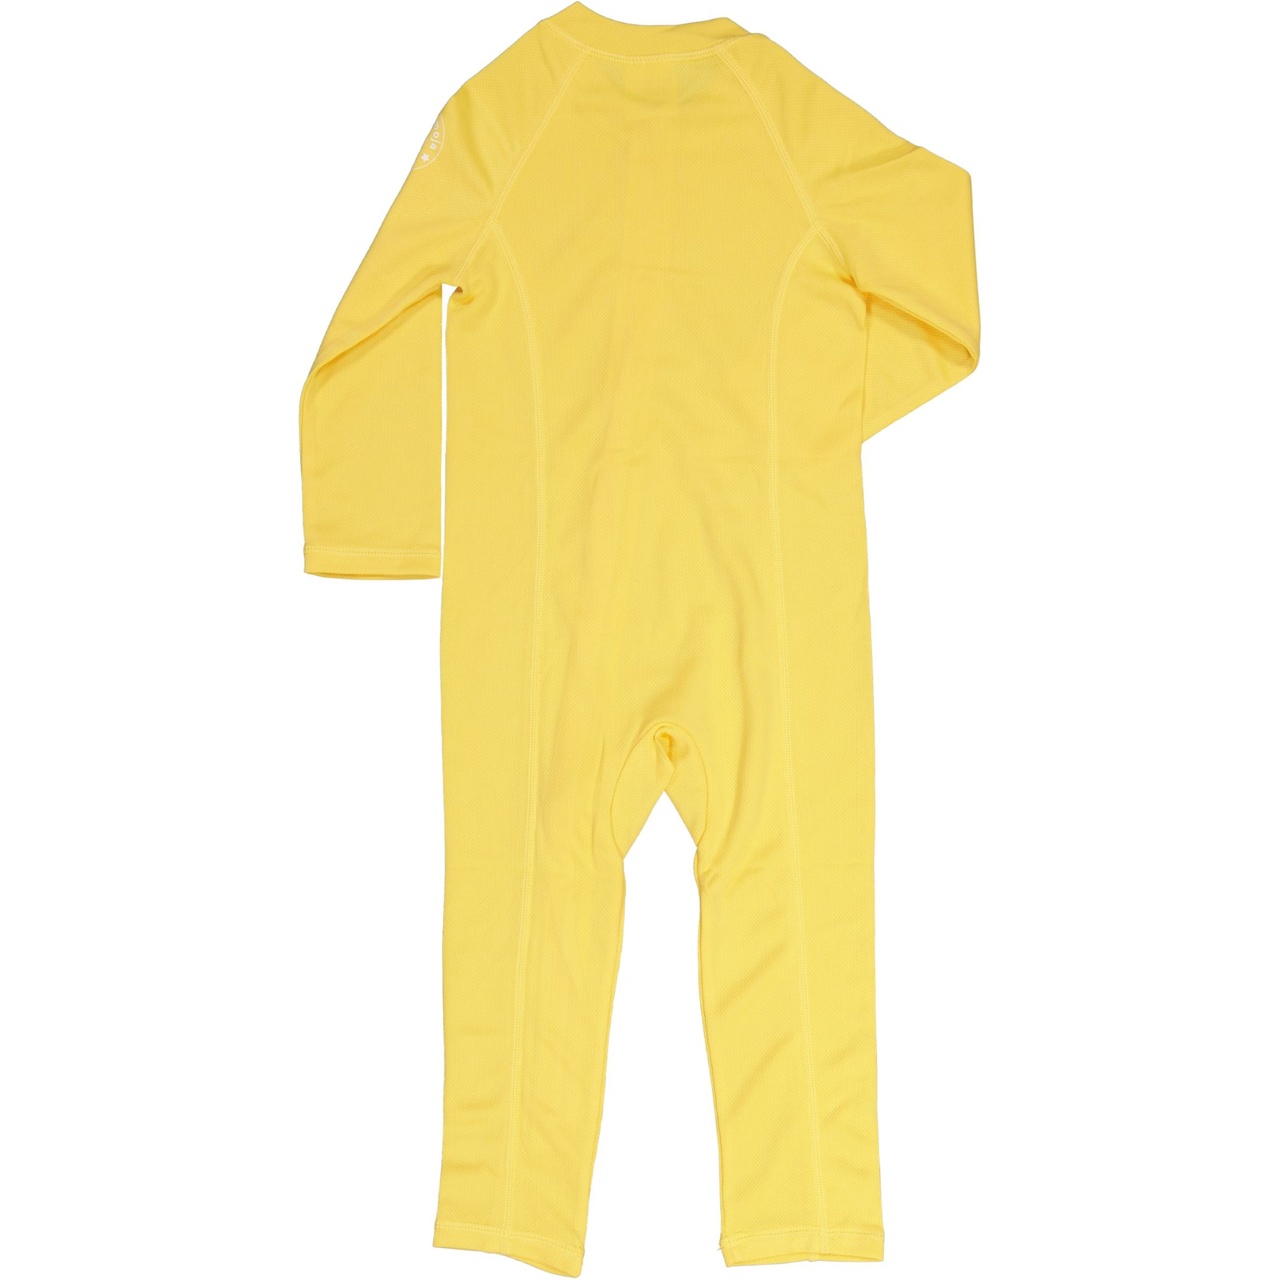 UV Baby suit Yellow  50/56